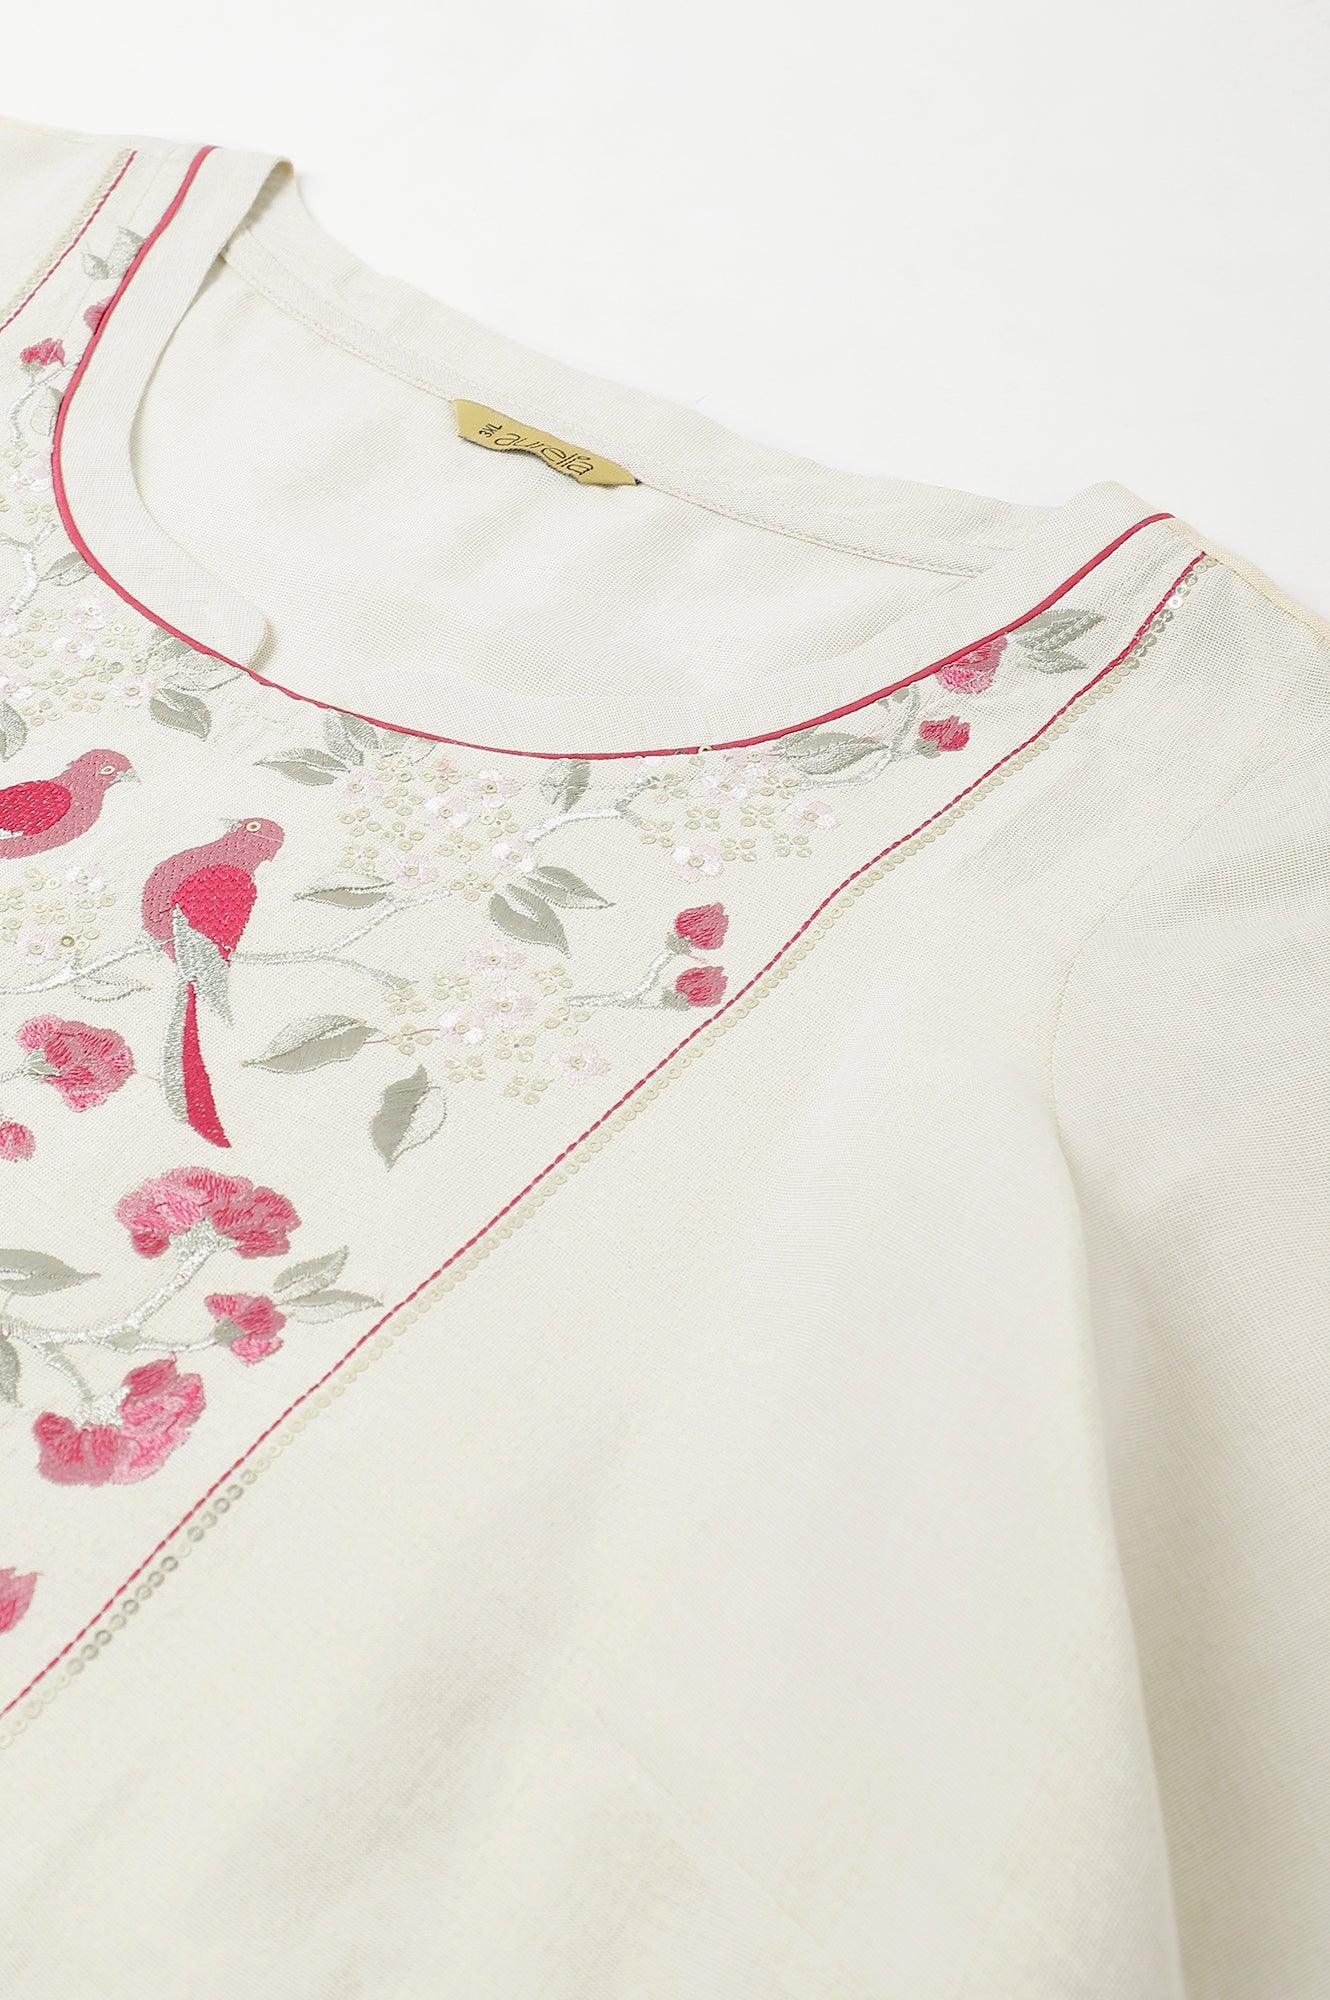 Off White Zari Embroidered Cotton Dobby Plus Size kurta - wforwoman